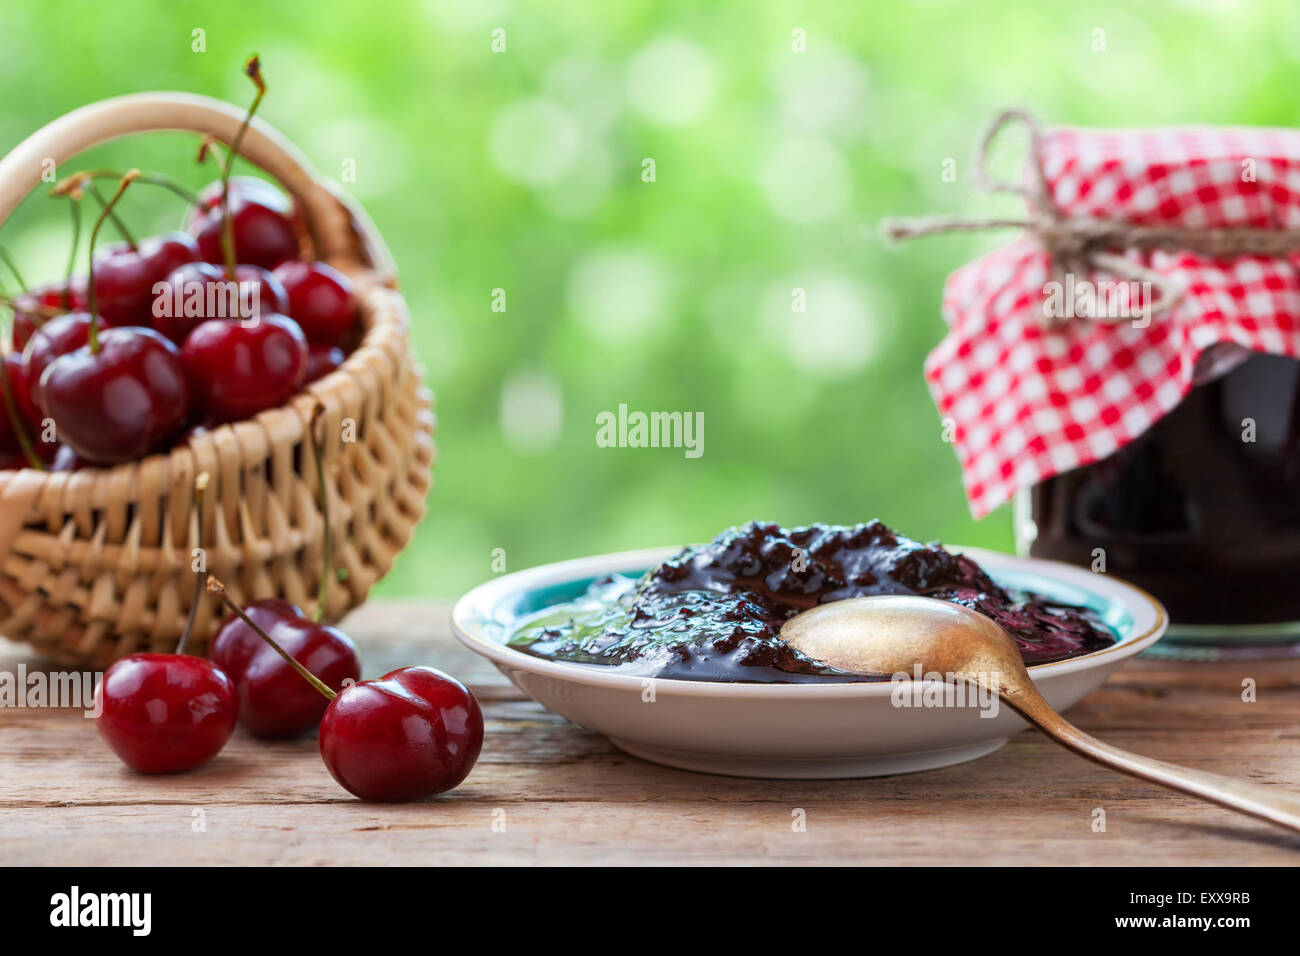 Cesta con cereza, un plato y una jarra de mermelada. Foto de stock